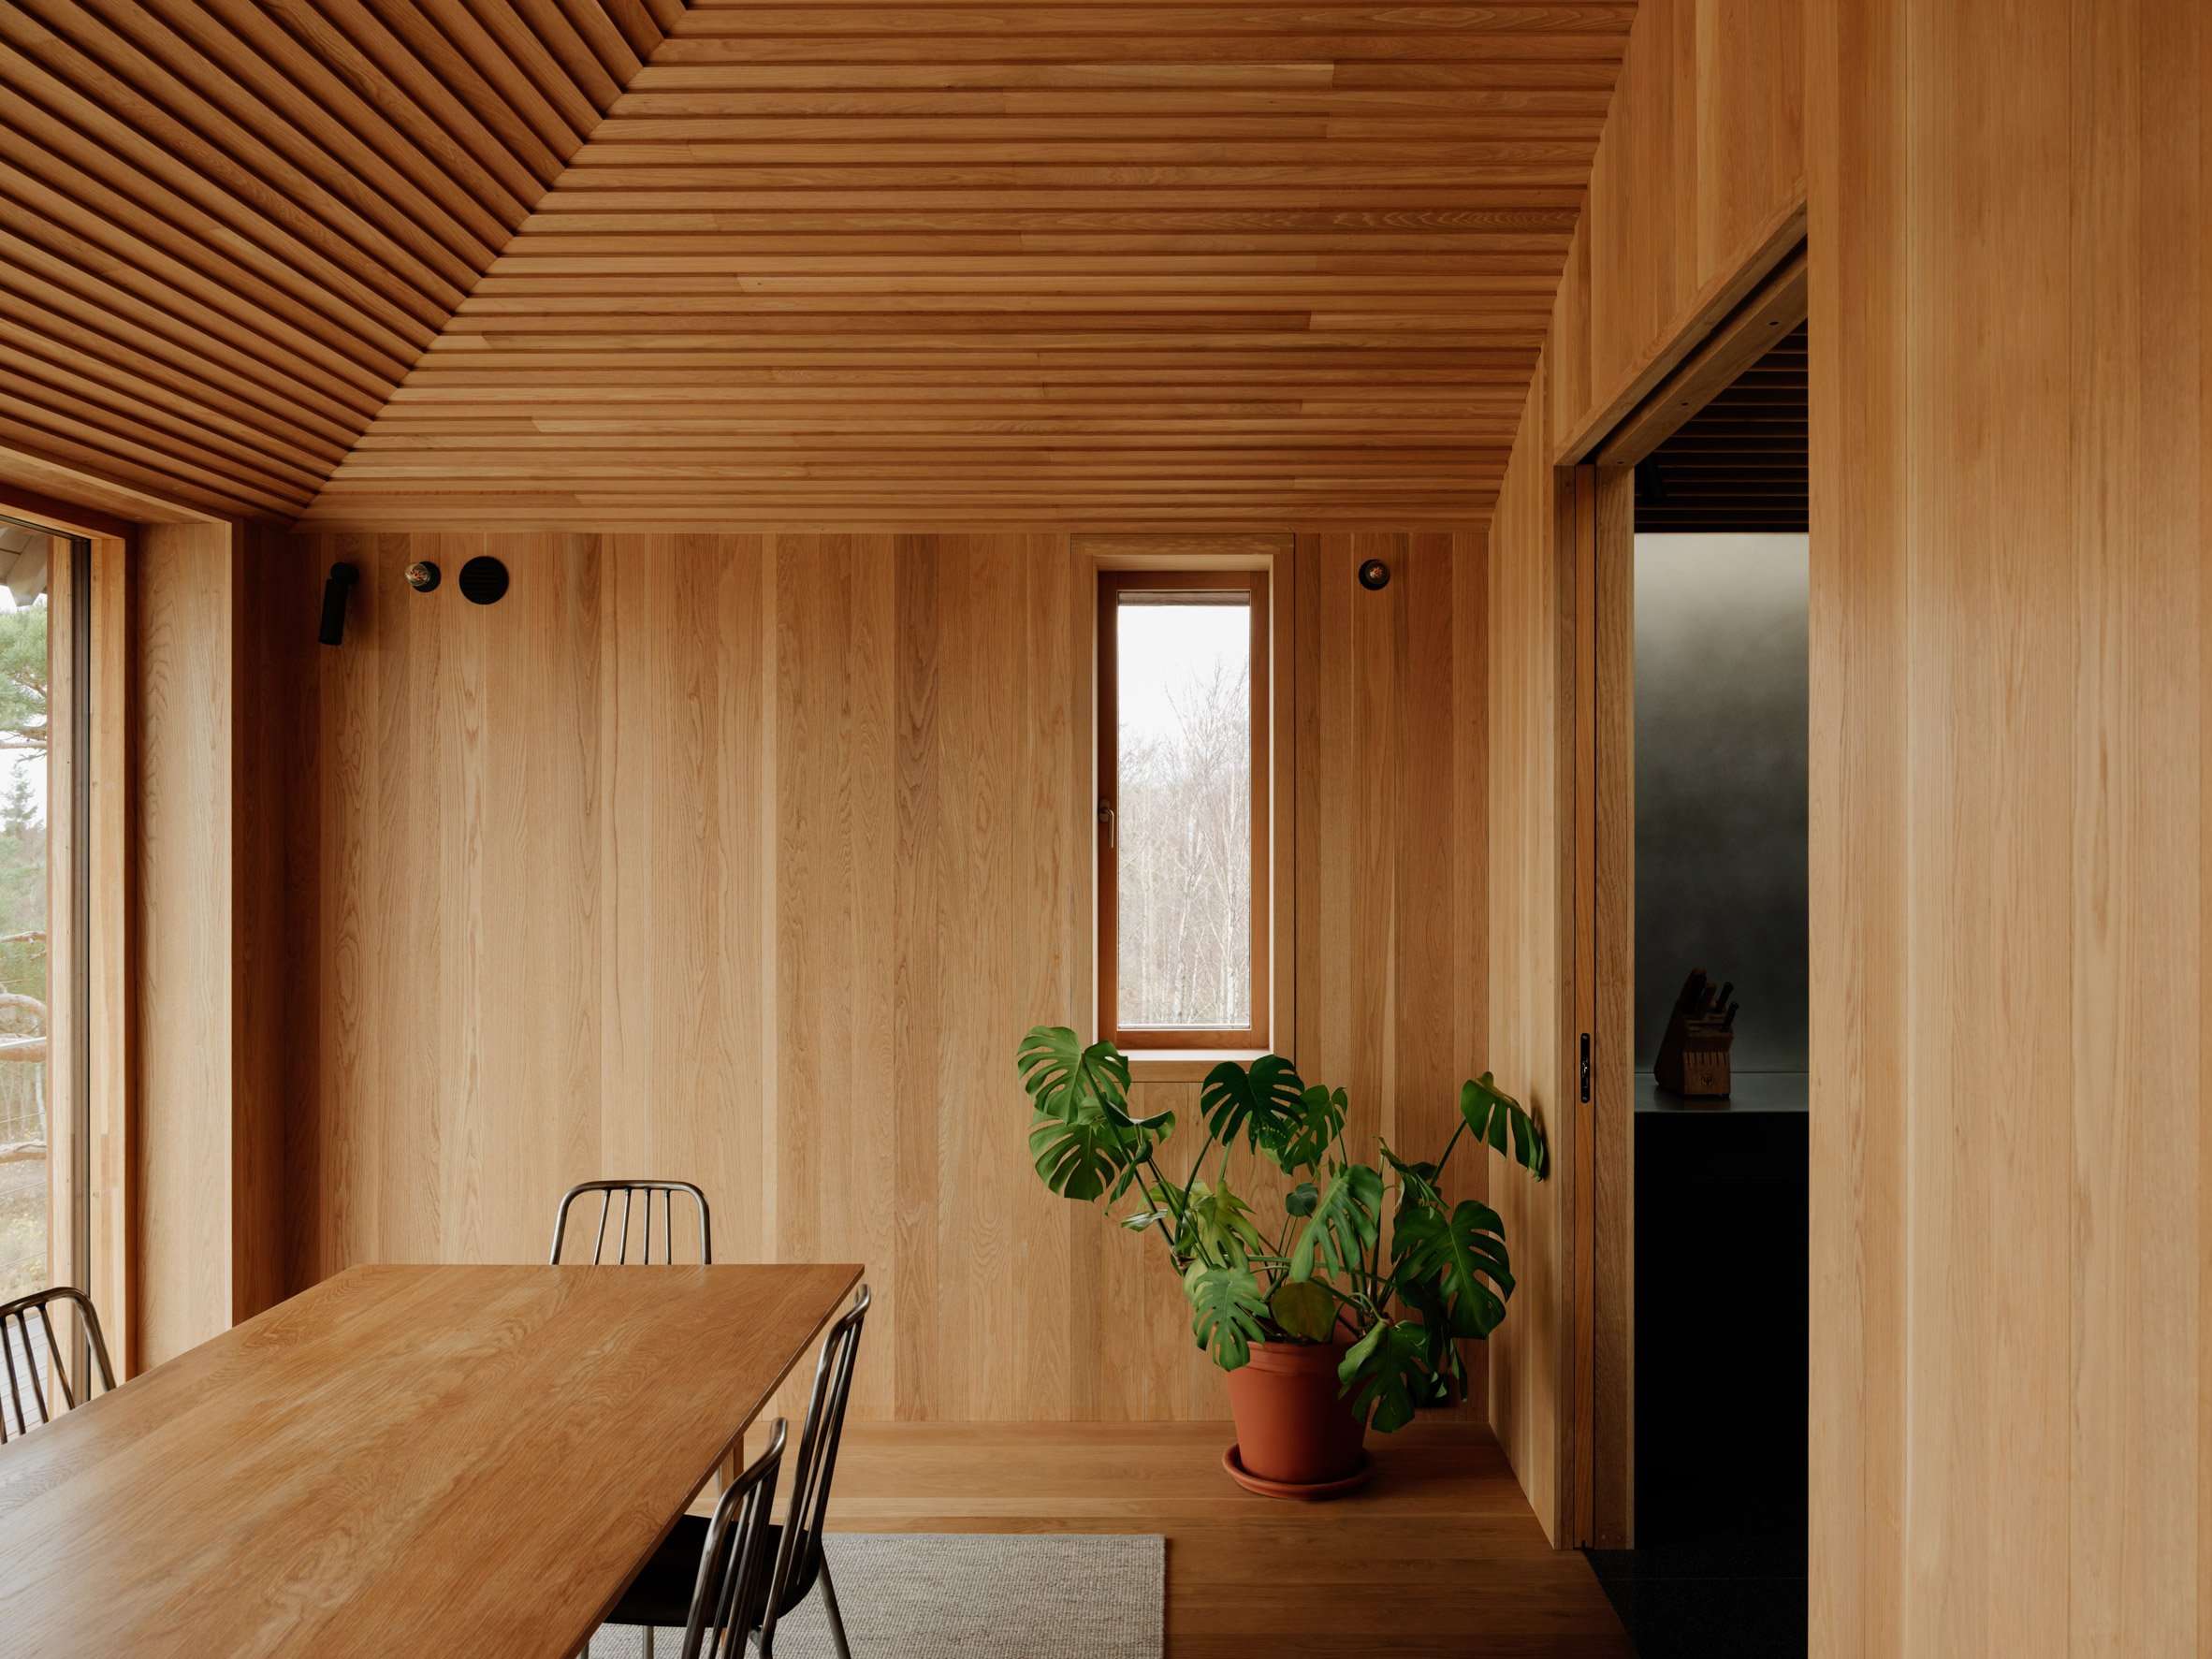 Weekend House was designed by Line Solgaard